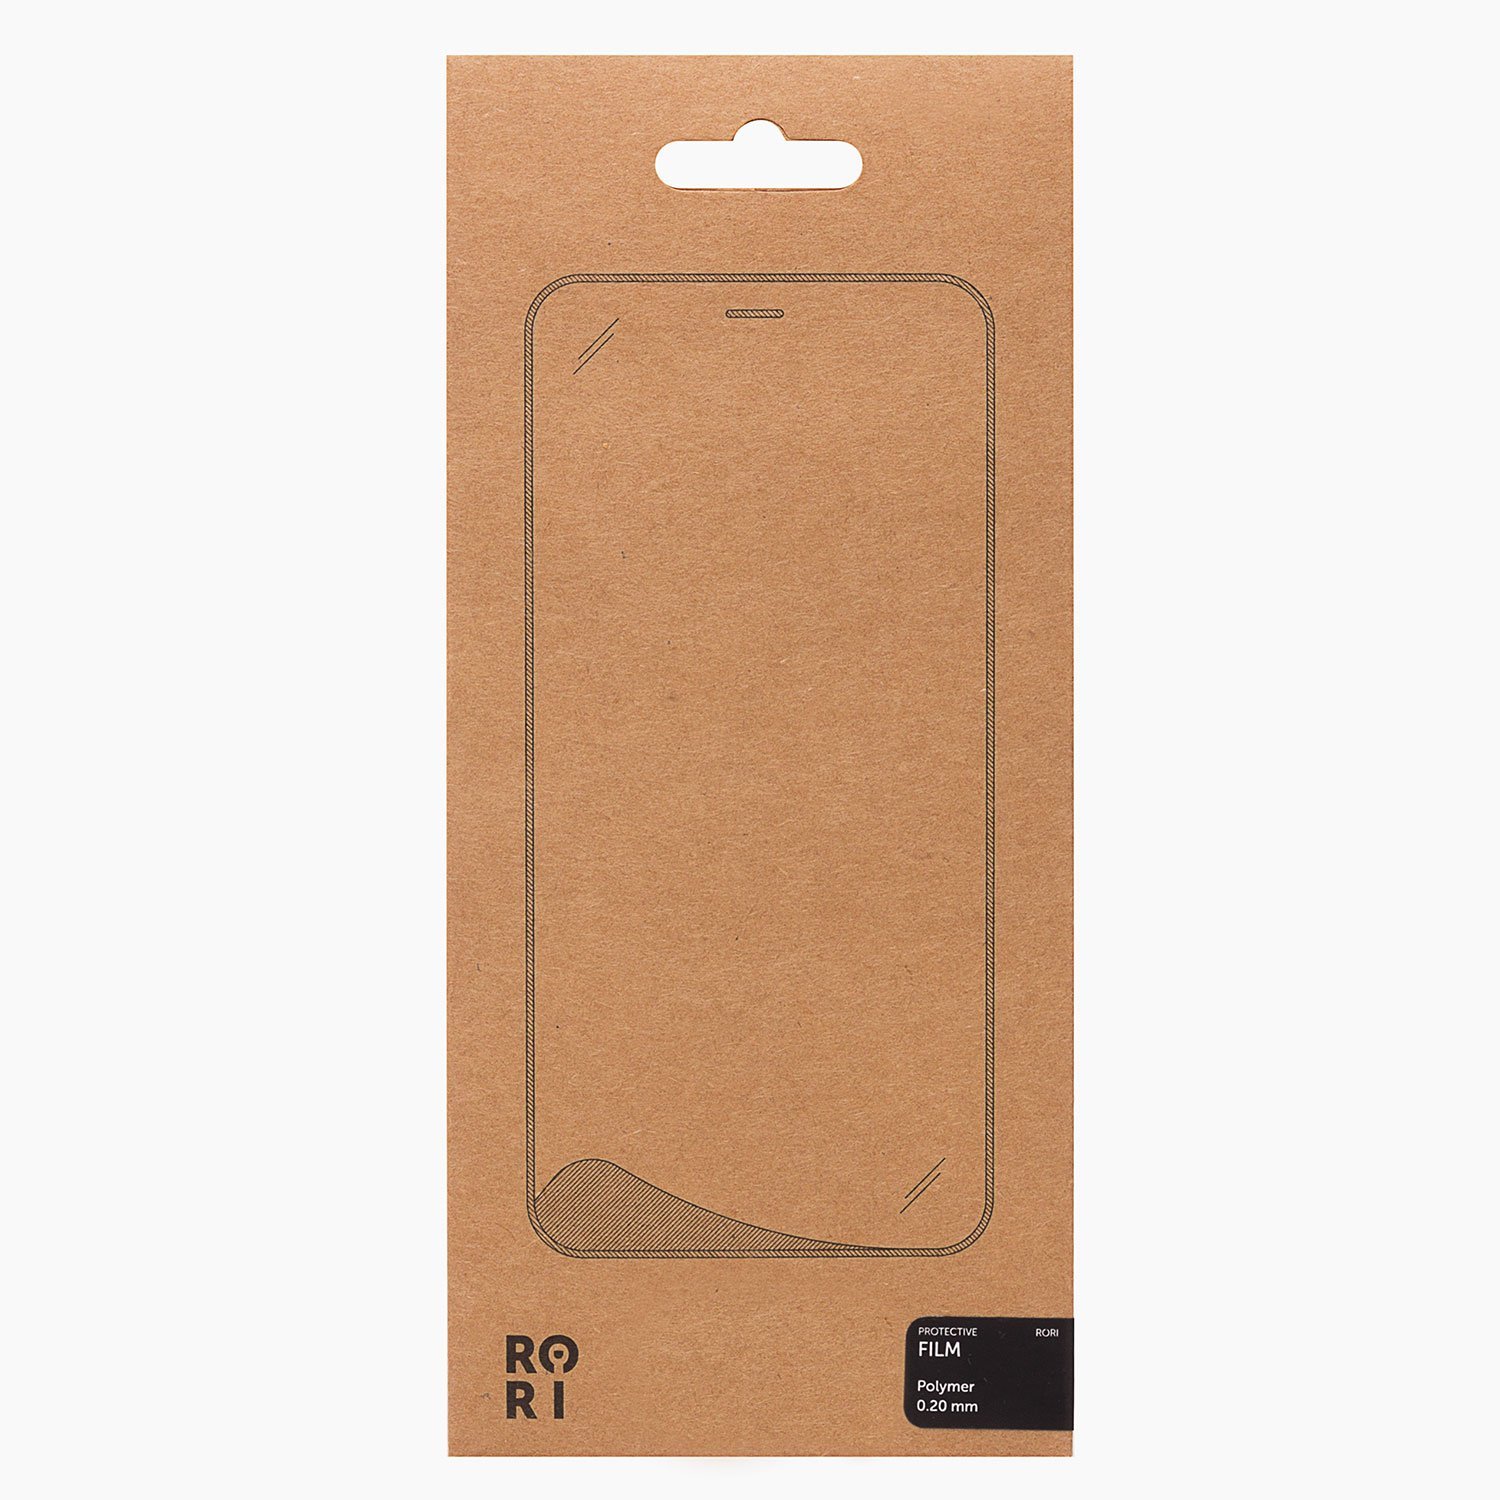 Защитная пленка Rori Polymer для экрана смартфона Apple iPhone 6/6S, поверхность матовая, белая рамка (126621)